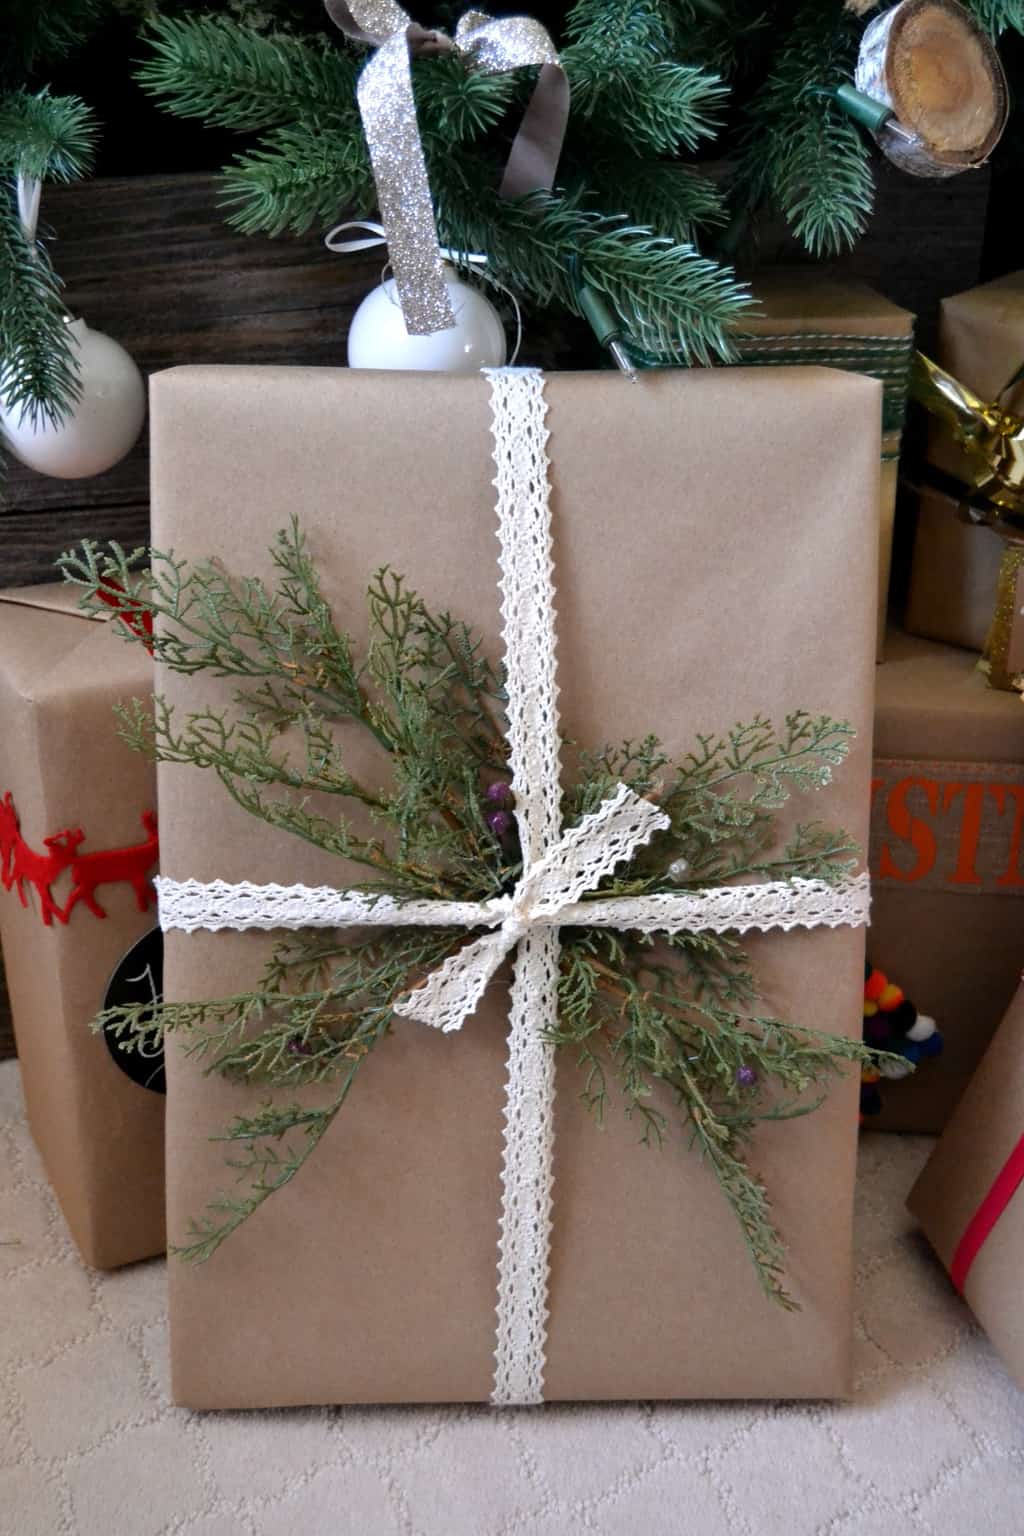 Christmas Gift Wrap Ideas - My Creative Days
